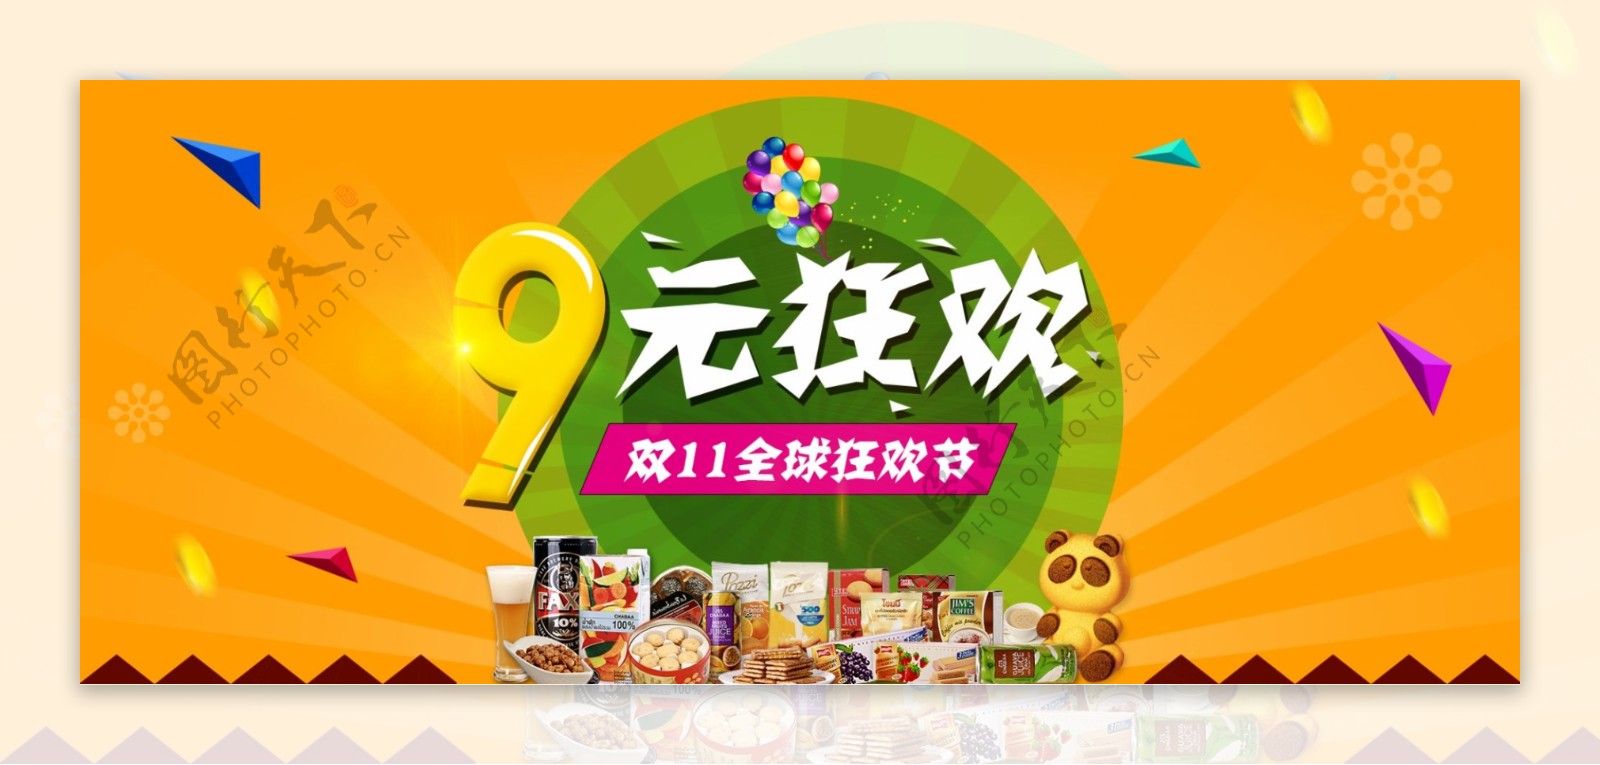 2015天猫淘宝双11全屏促销海报